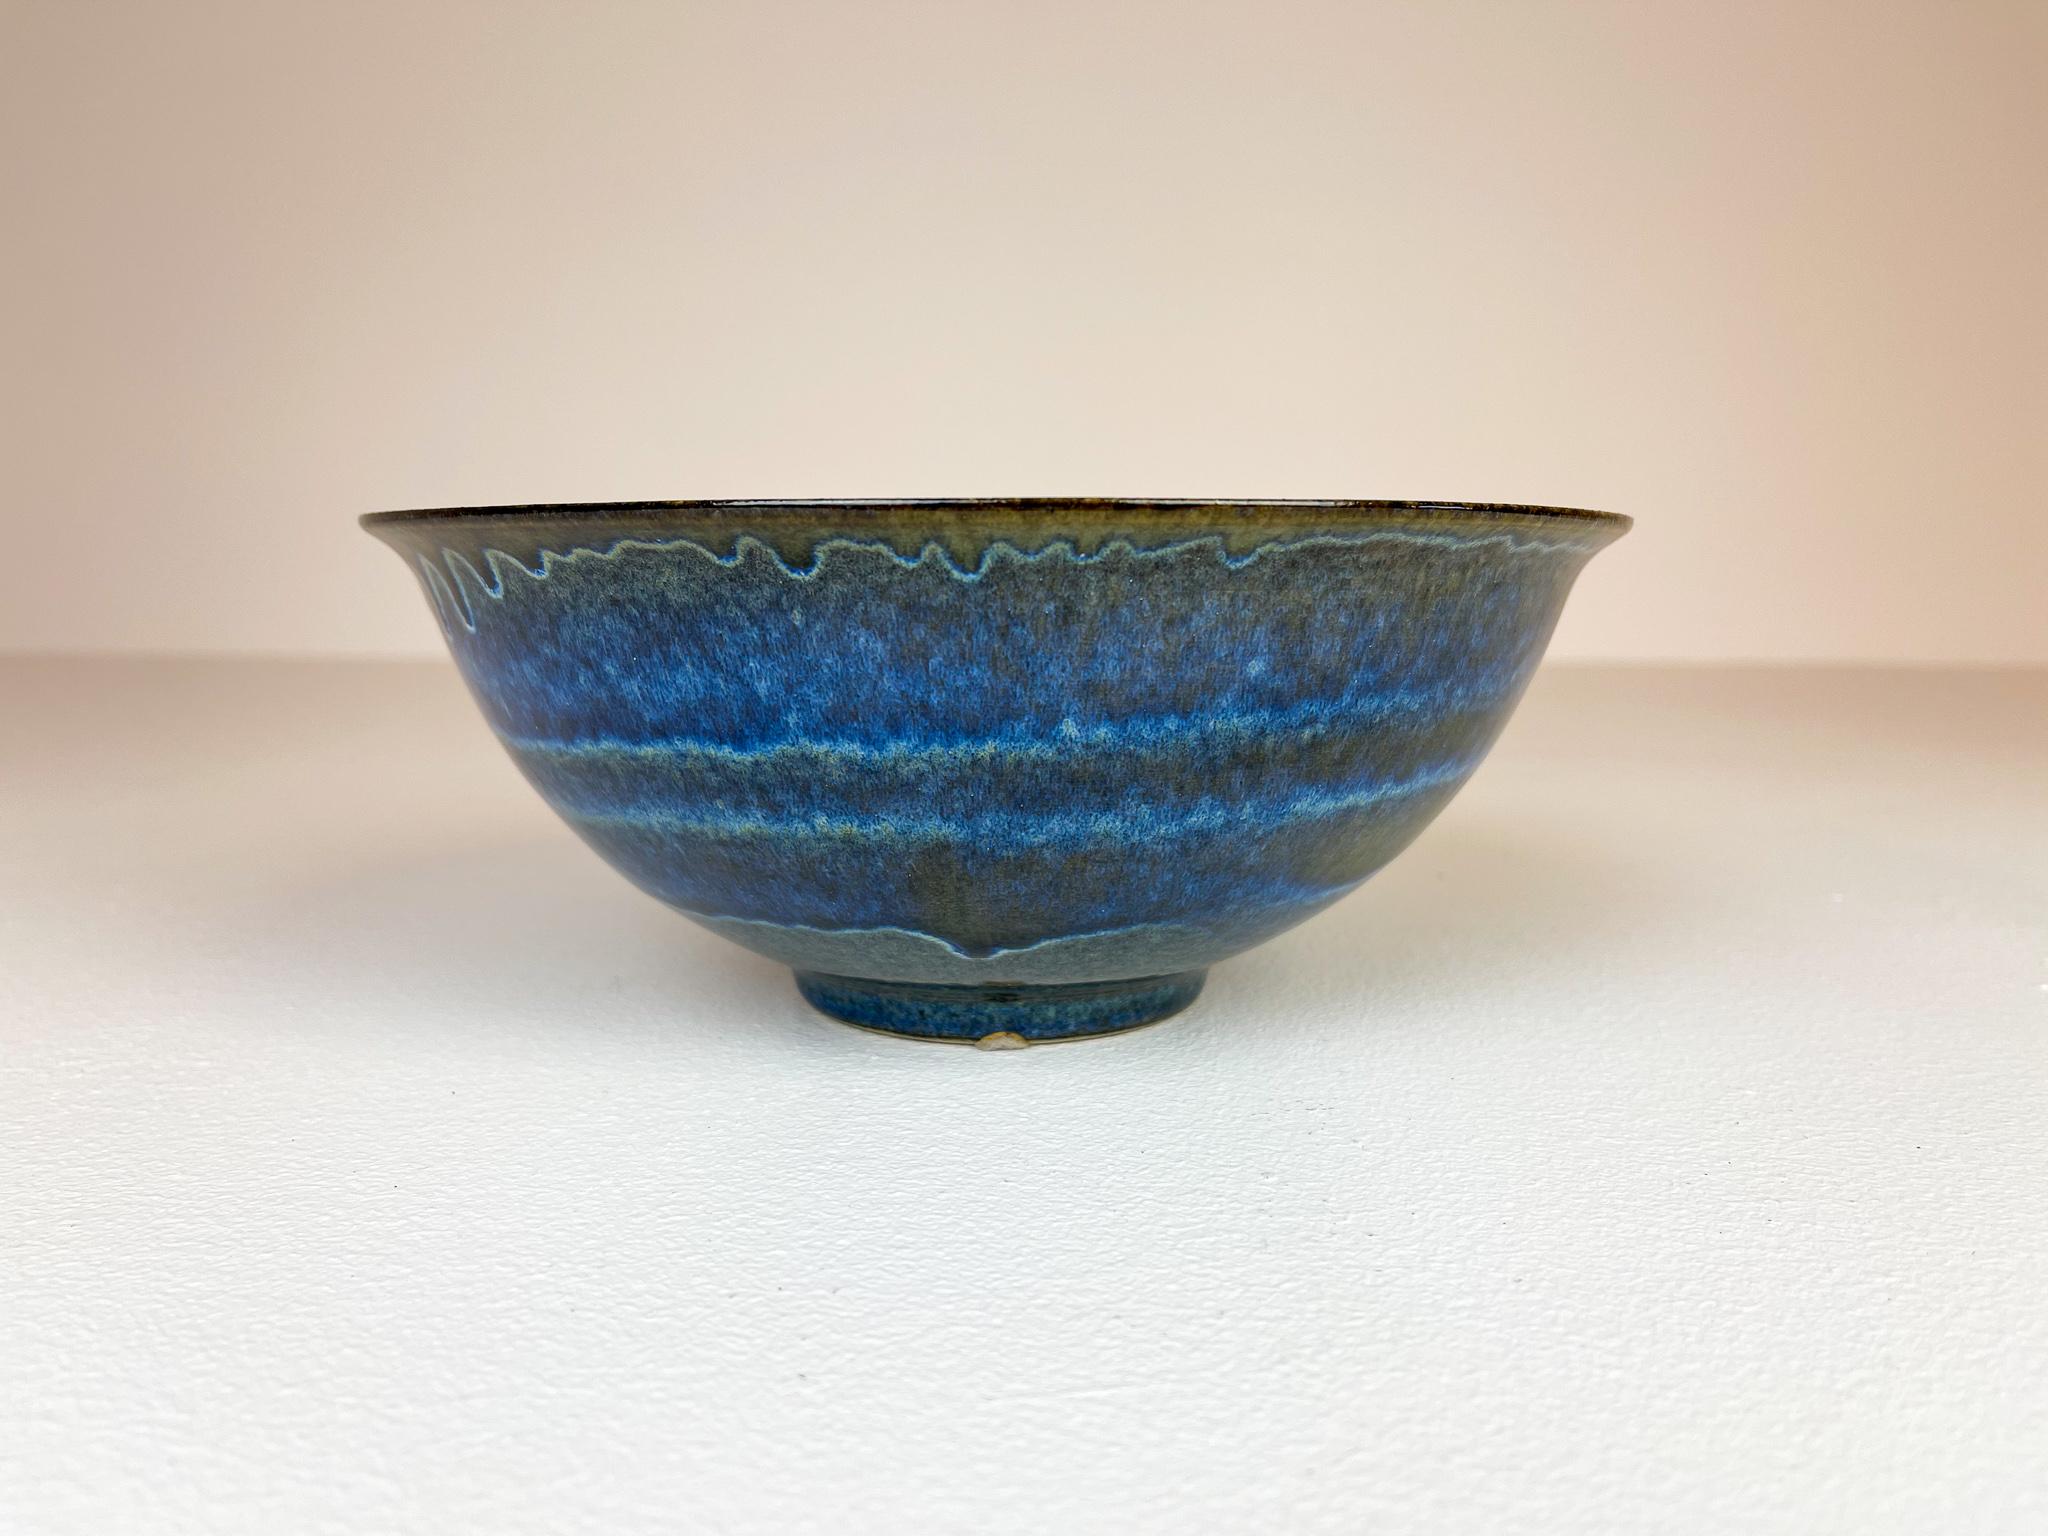 Scandinavian Modern Ceramic Bowls by Carl-Harry Stålhane Design Huset, Sweden For Sale 8